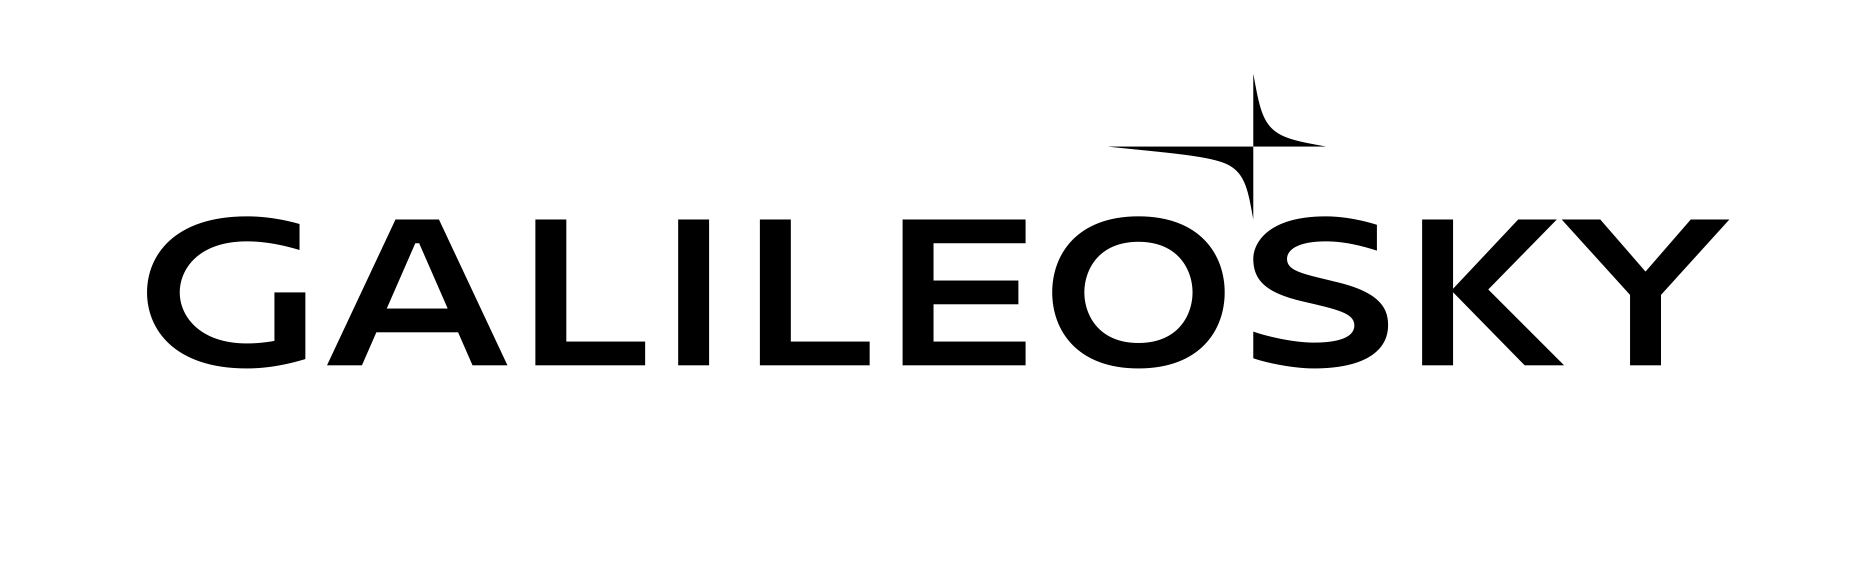 Galileosky company logo